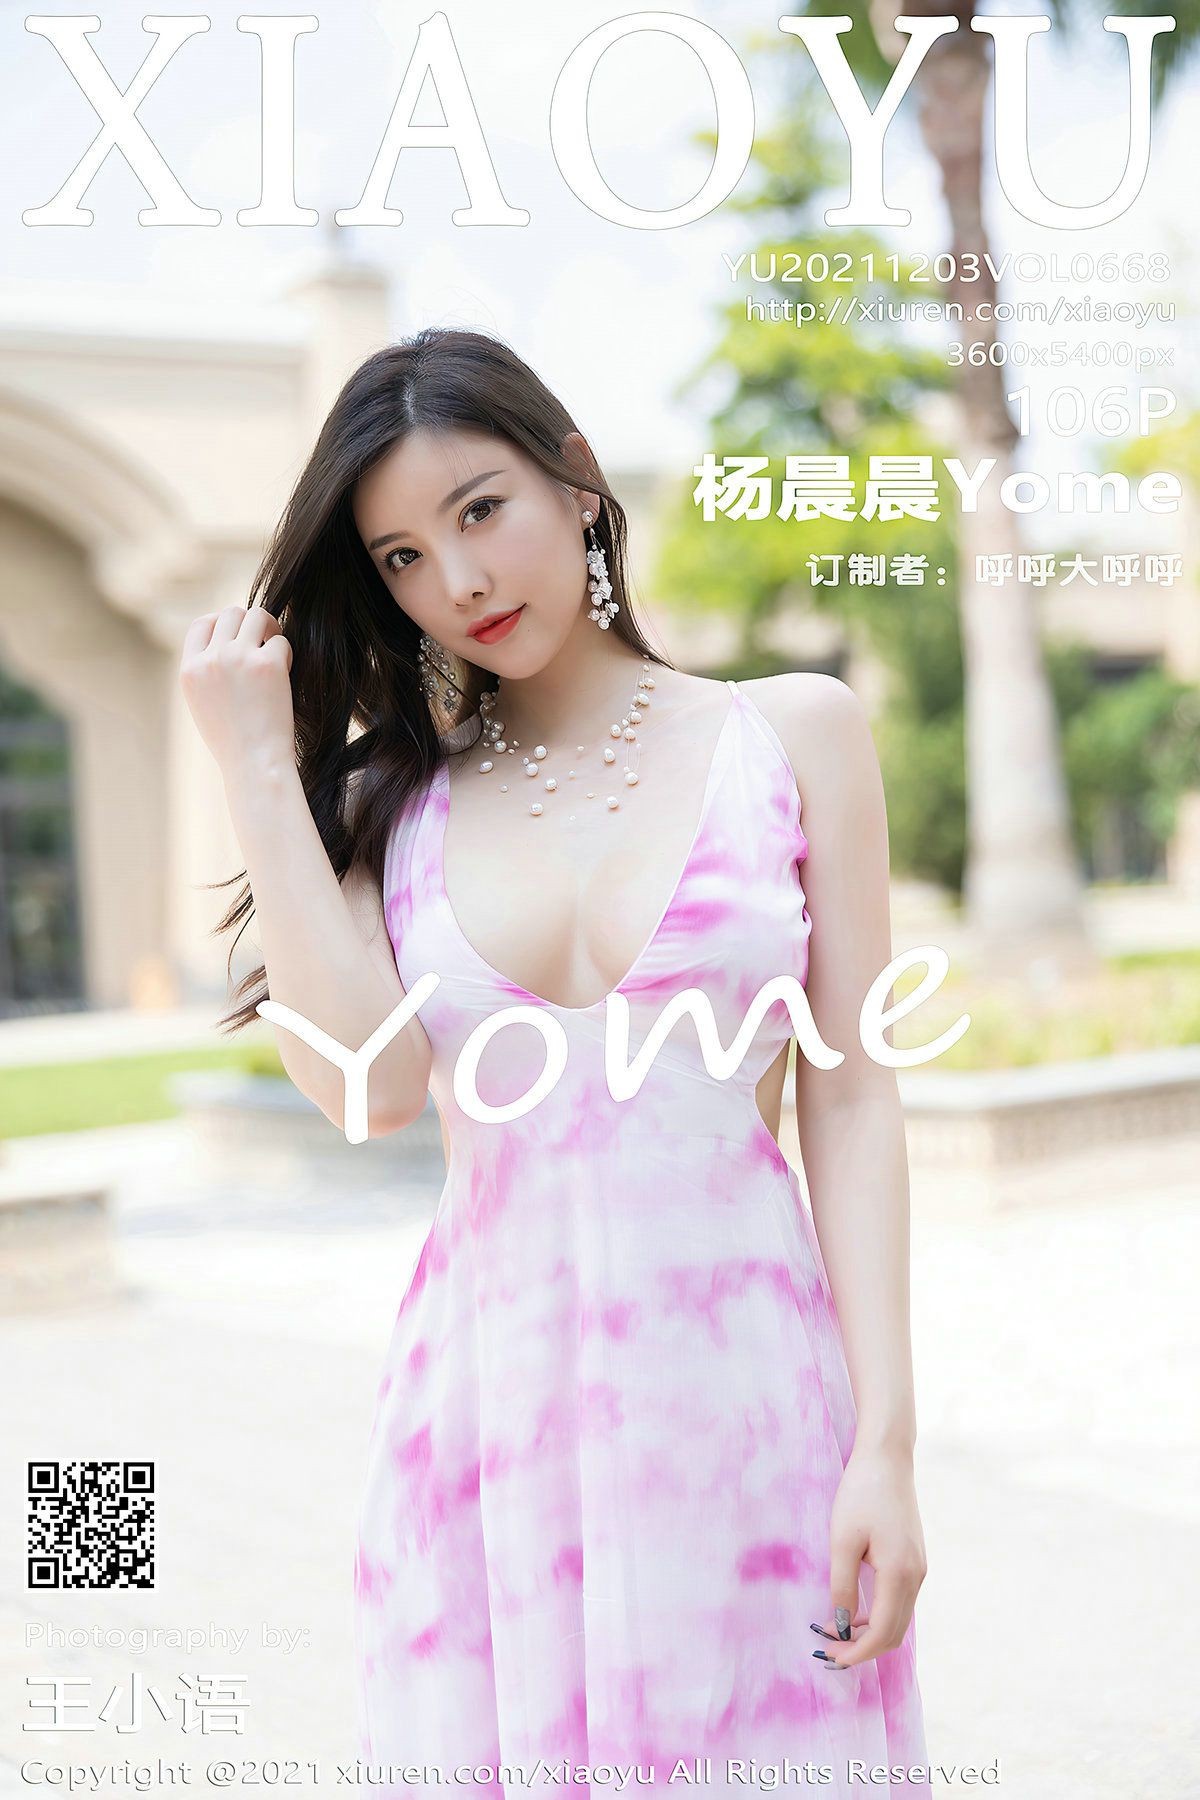 XIAOYU语画界性感模特写真第Vol.668期杨晨晨Yome (108)